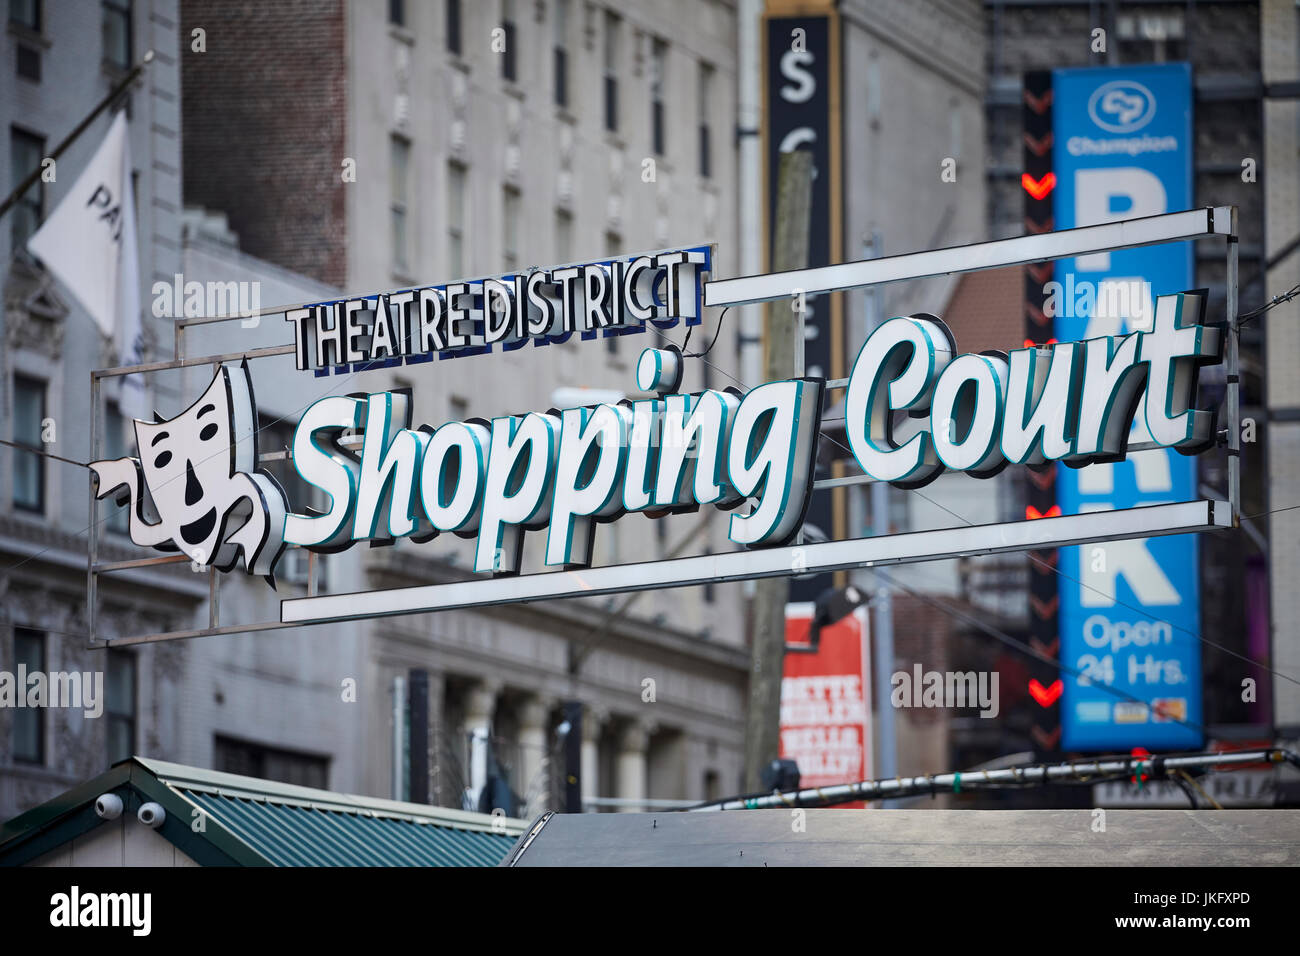 La ville de New York, Manhattan, 8e Avenue Theatre District Shopping signe avec logo masque Cour Banque D'Images